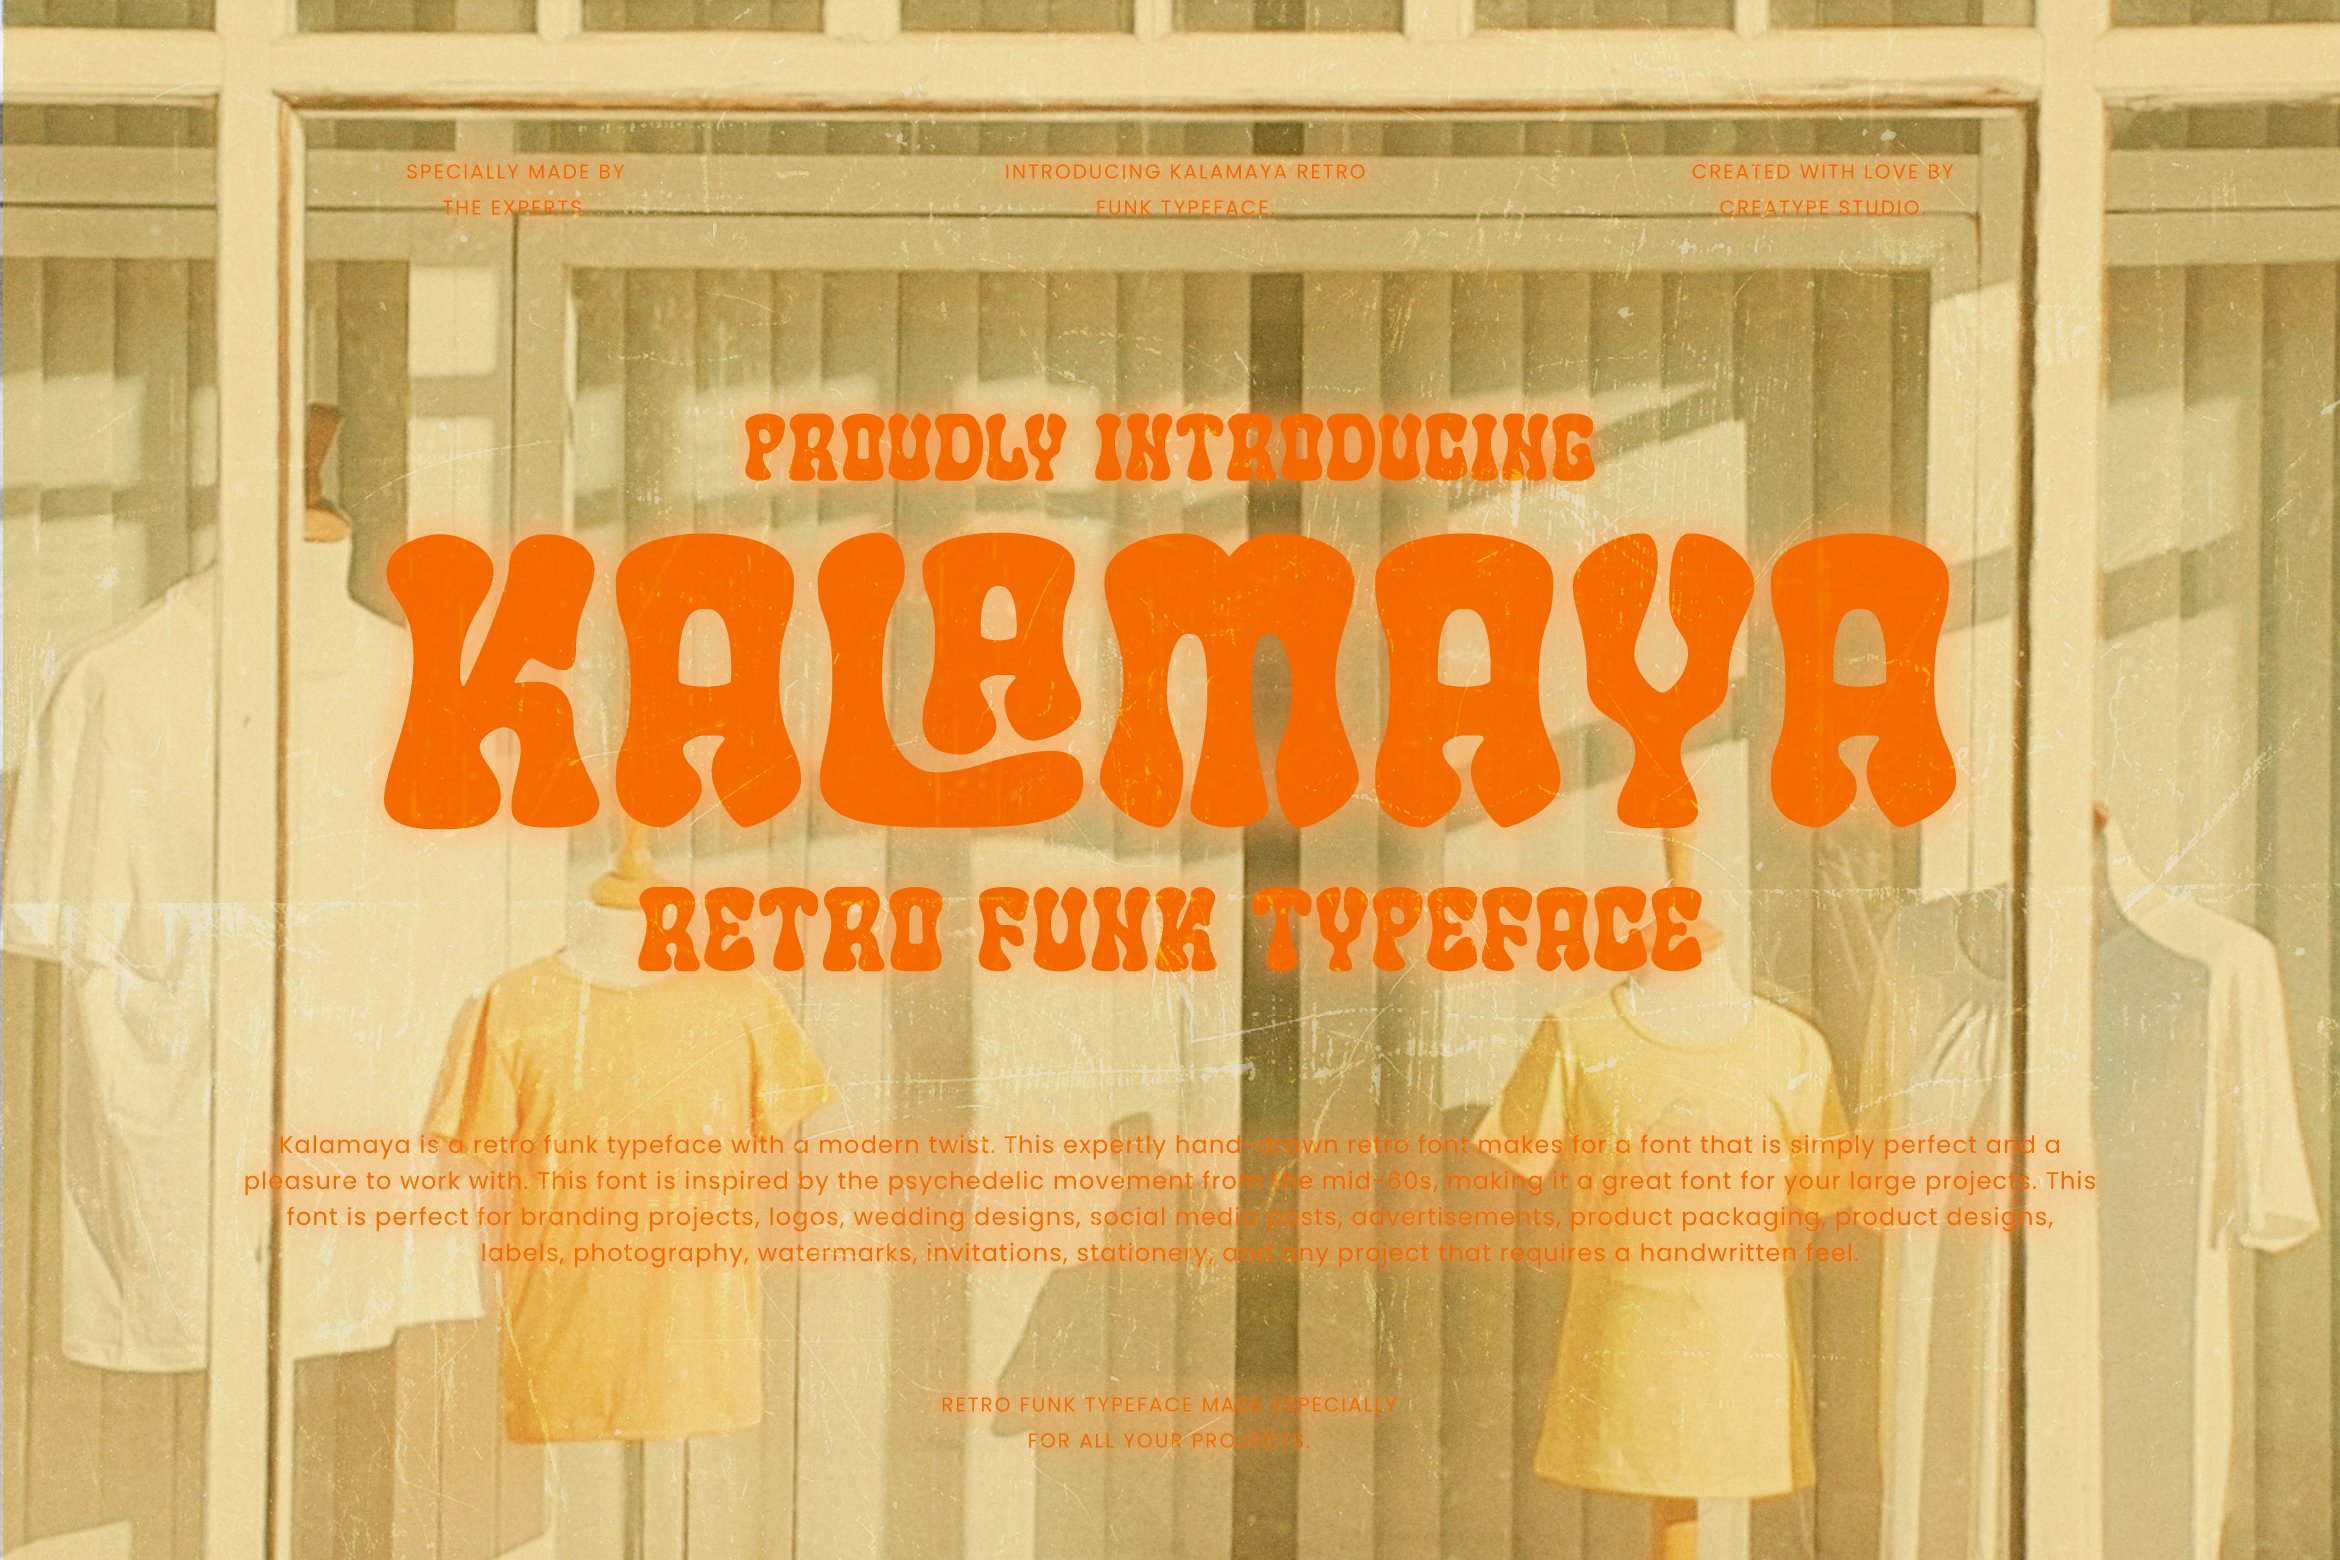 Kalamaya Retro Funk Business Font cover image.